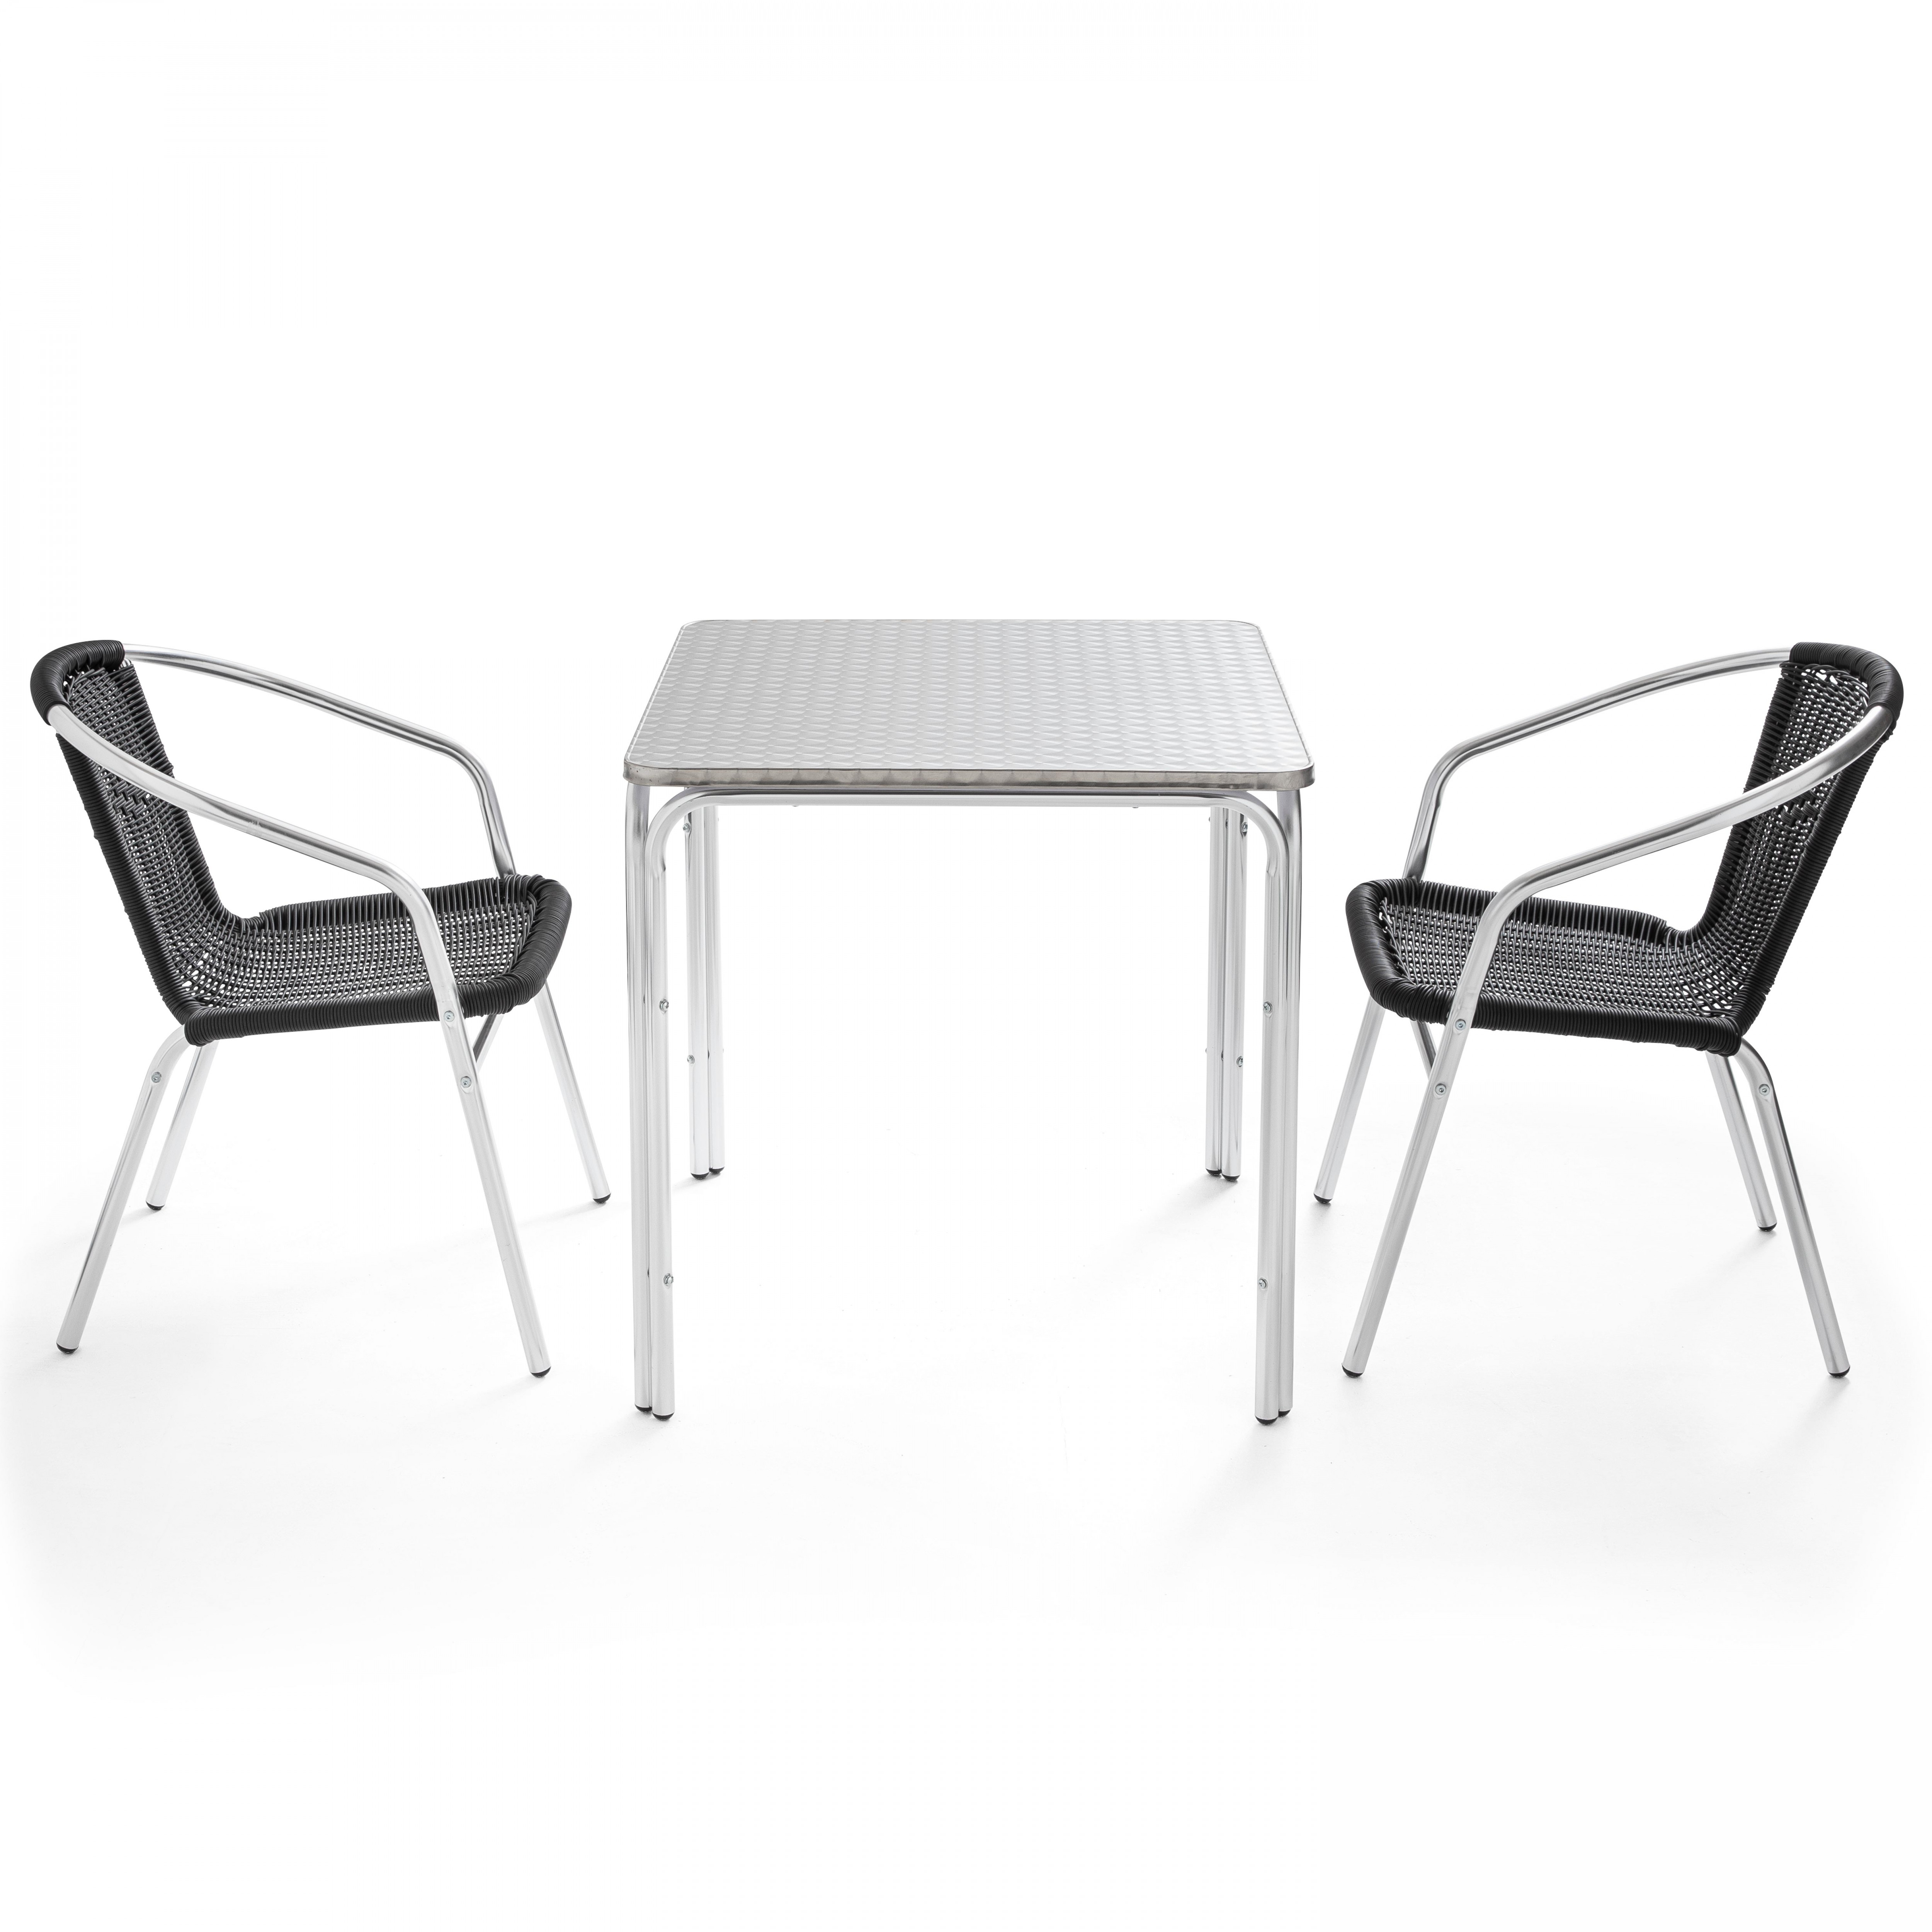 Table de jardin carrée 70 x 70 cm et 2 chaises avec accoudoirs en résine tressé empilables